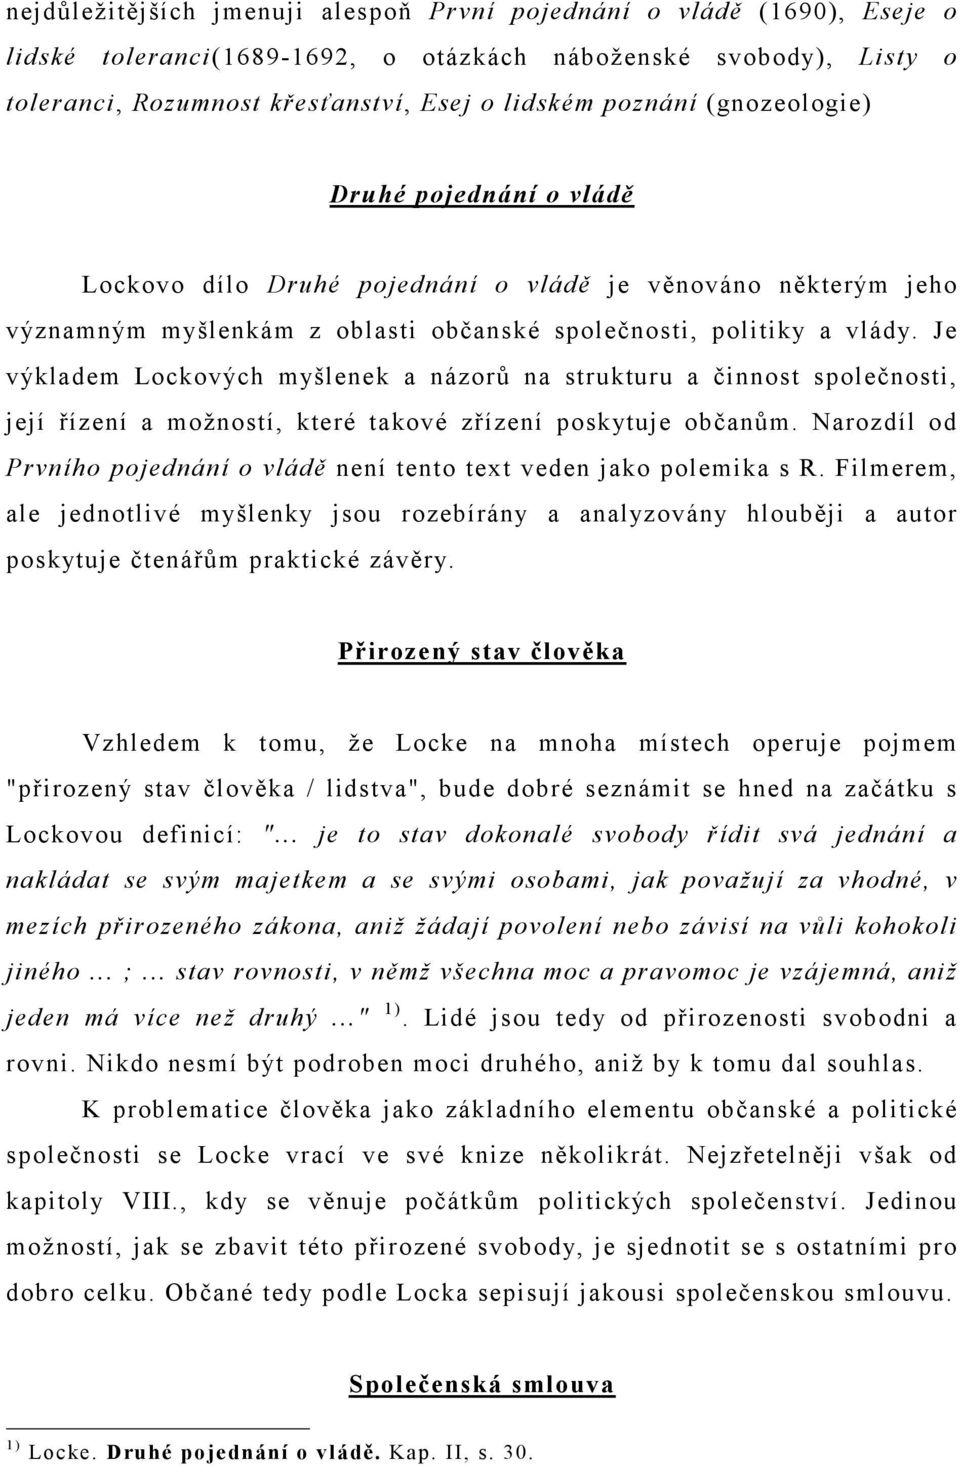 JOHN LOCKE: DRUHÉ POJEDNÁNÍ O VLÁDĚ - PDF Free Download